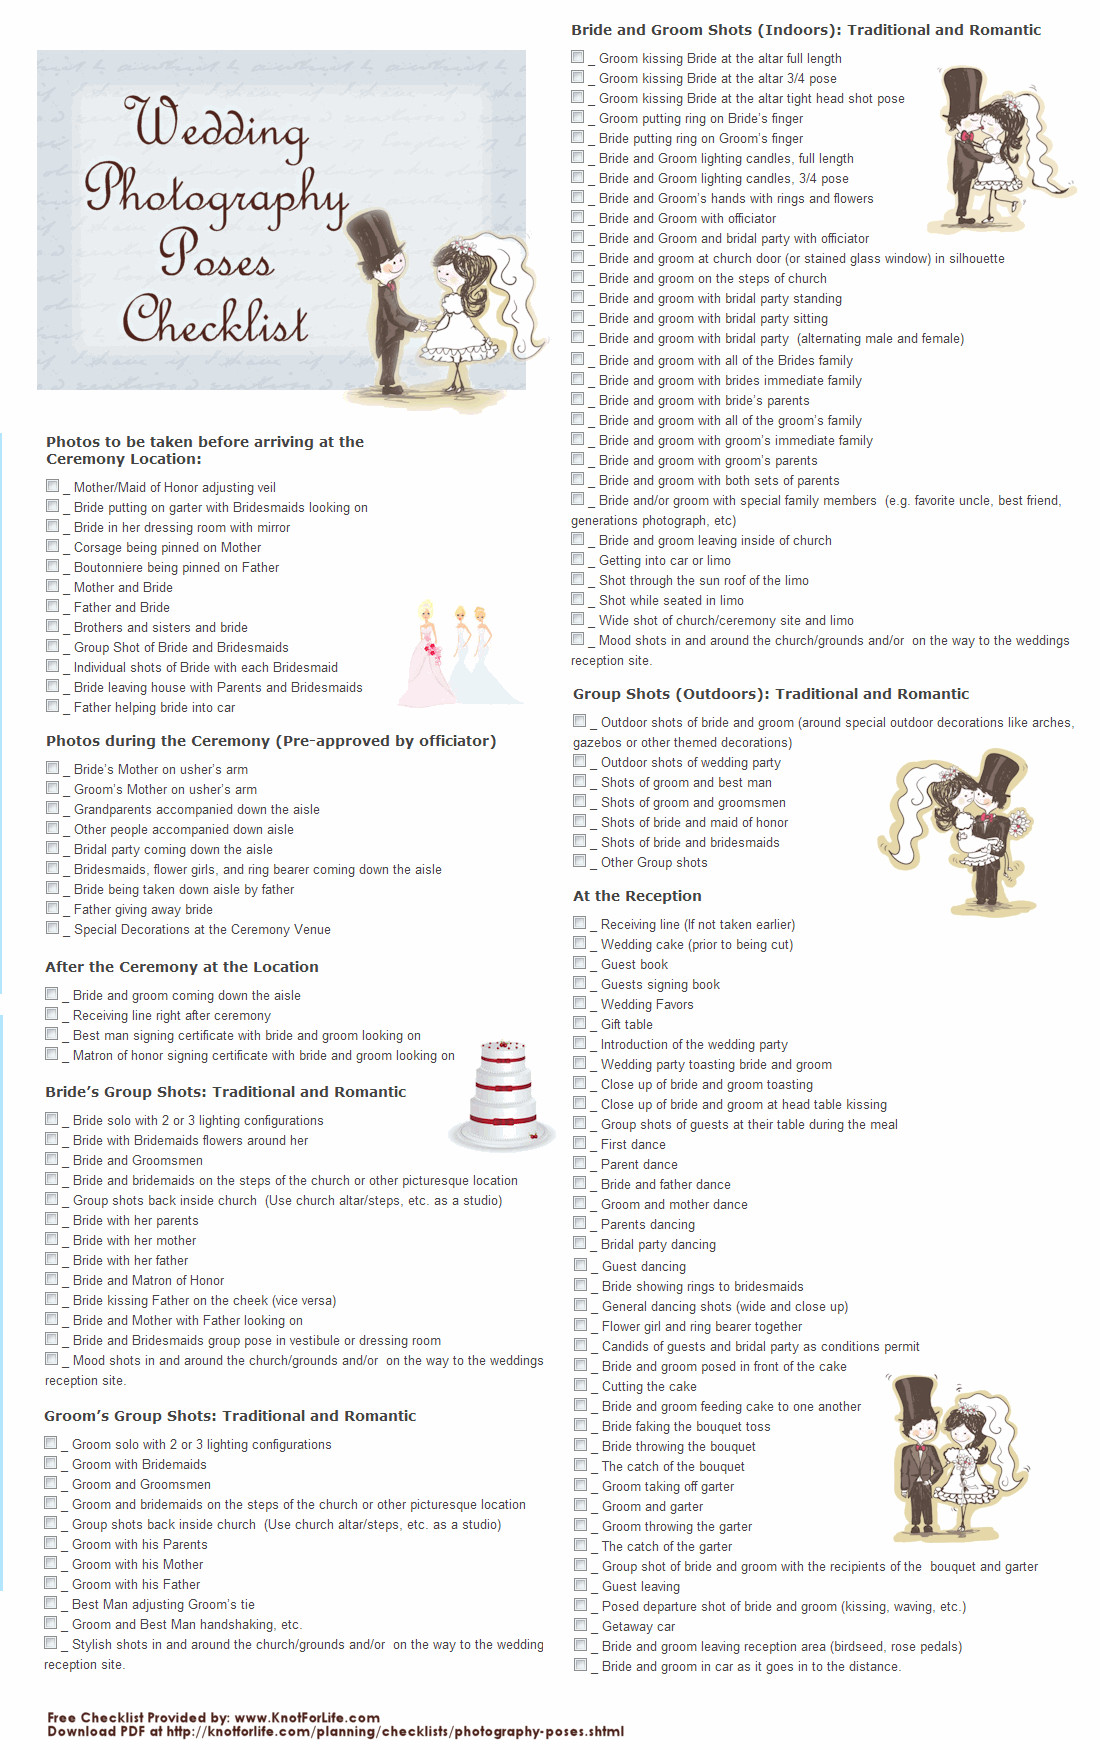 Wedding graphy Checklist on Pinterest